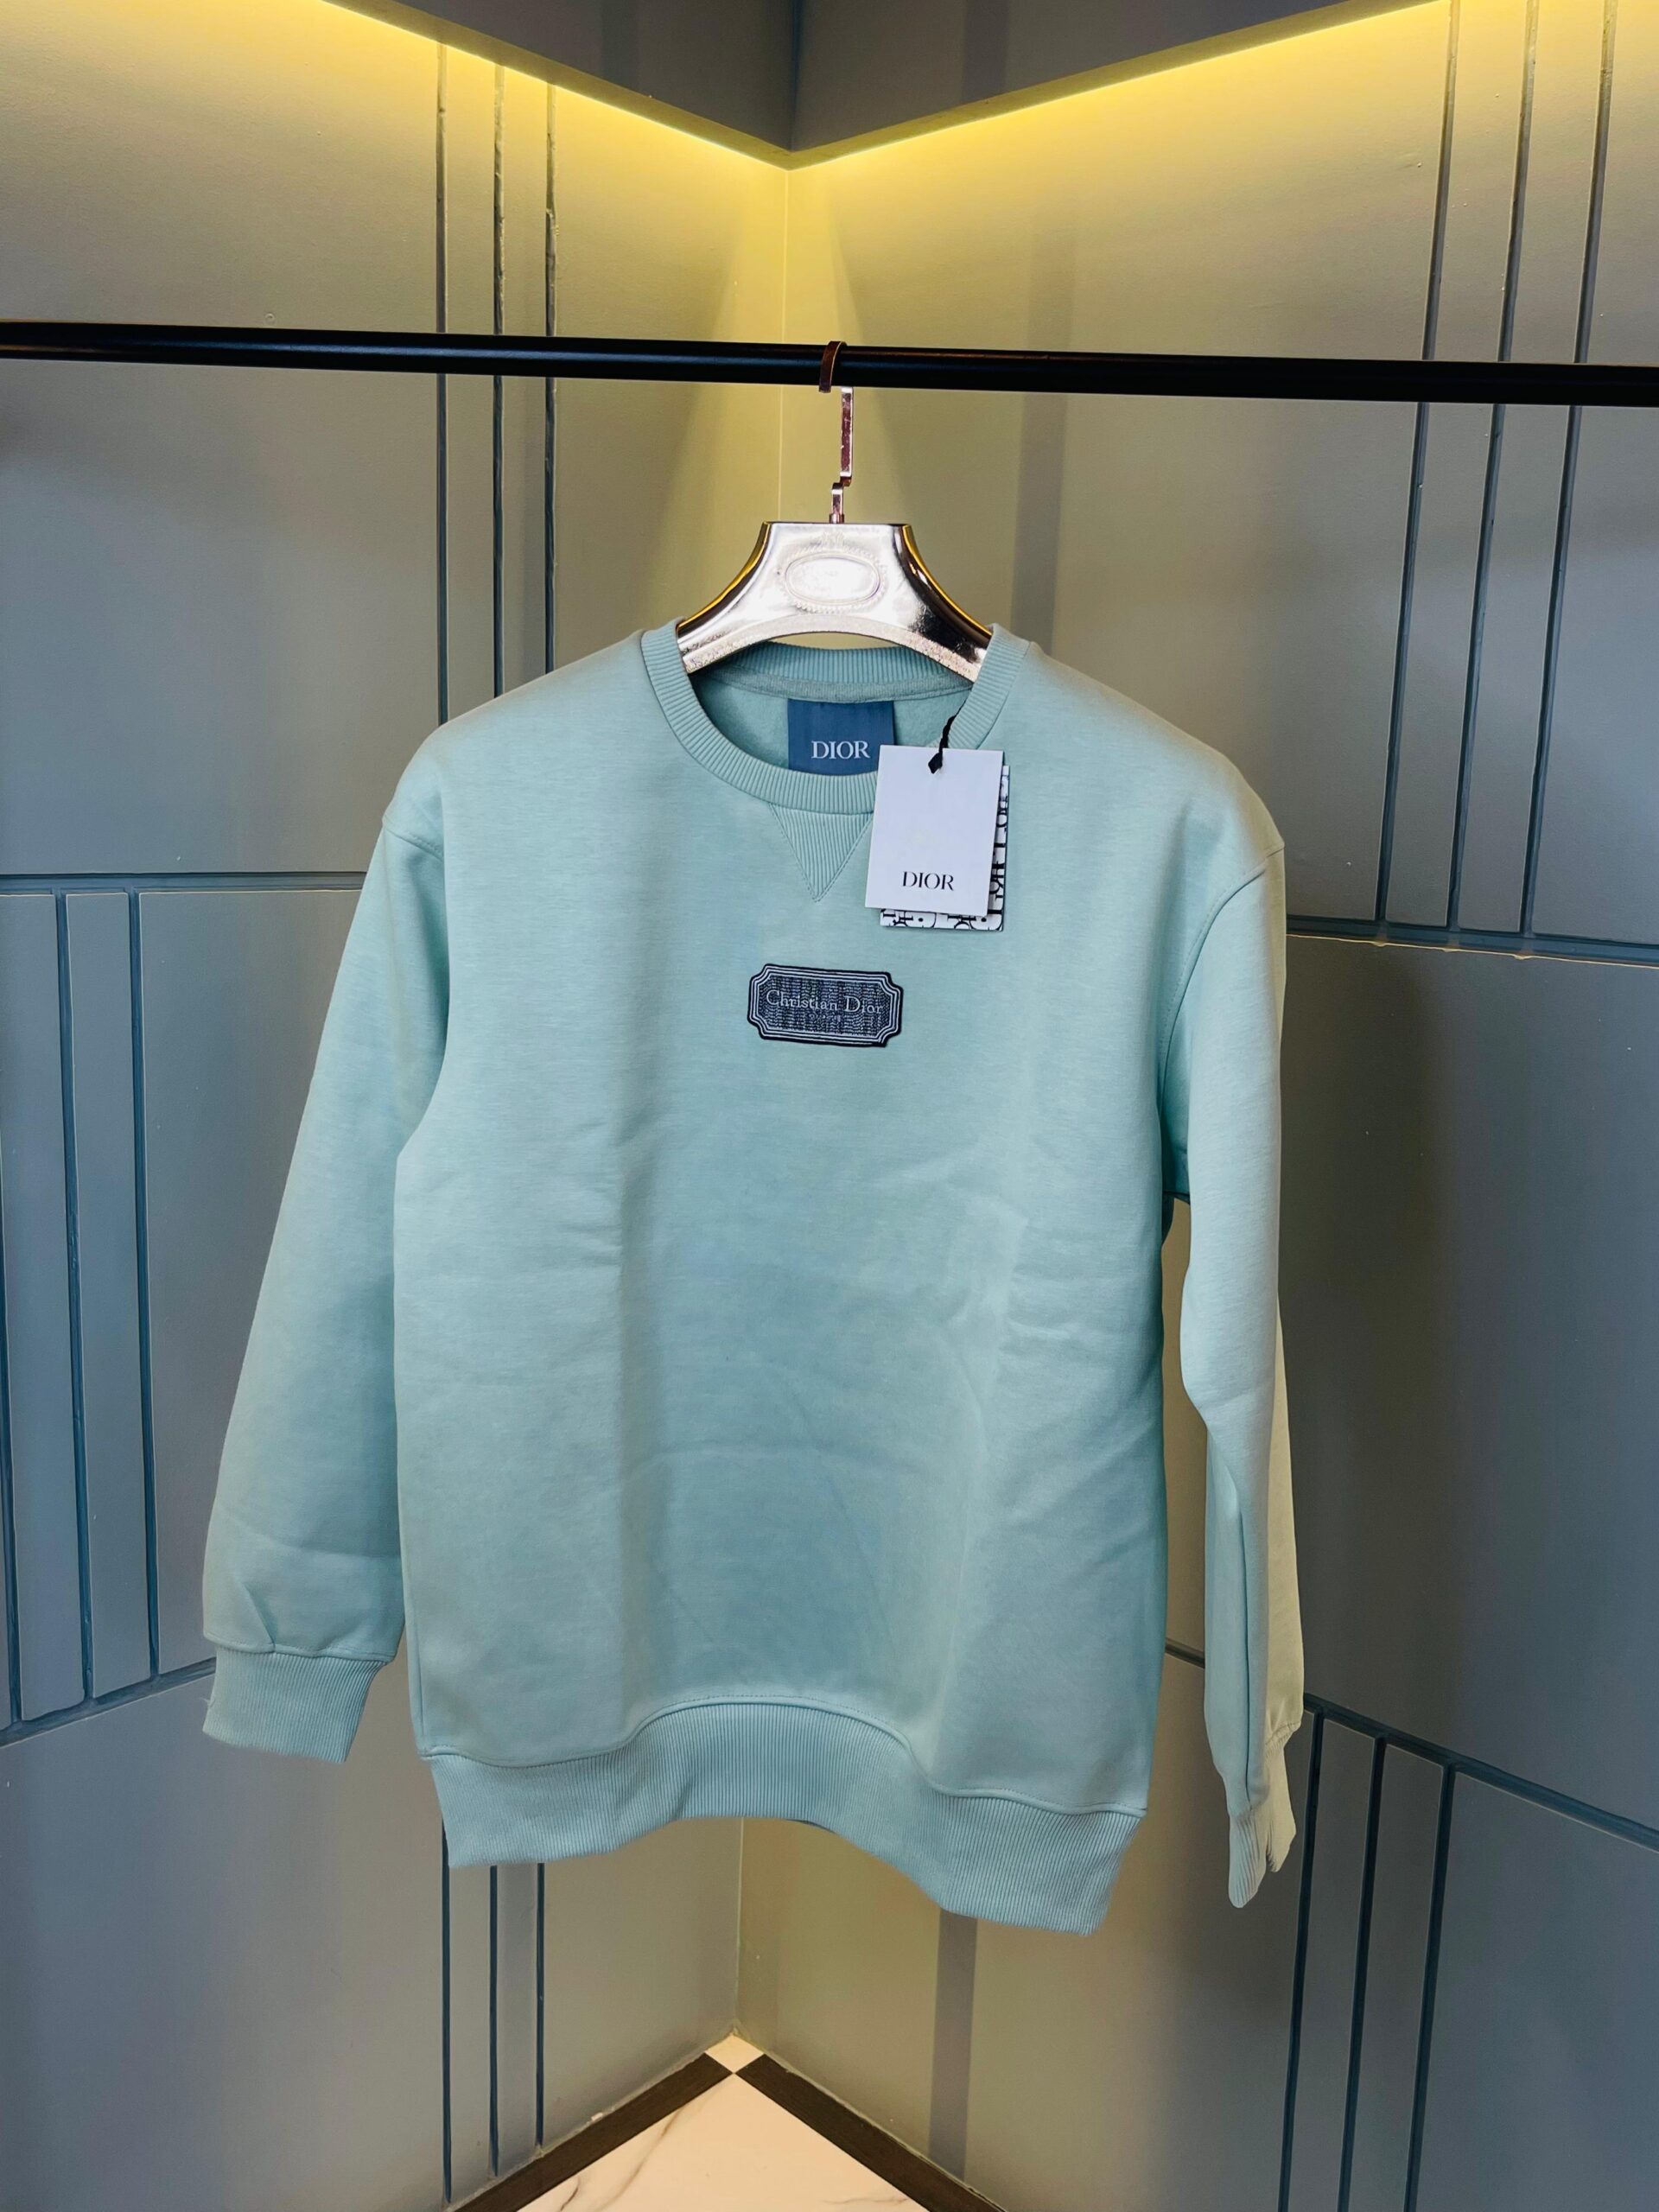 Dior Cotton Sweatshirts For Men - Best Deals Guru